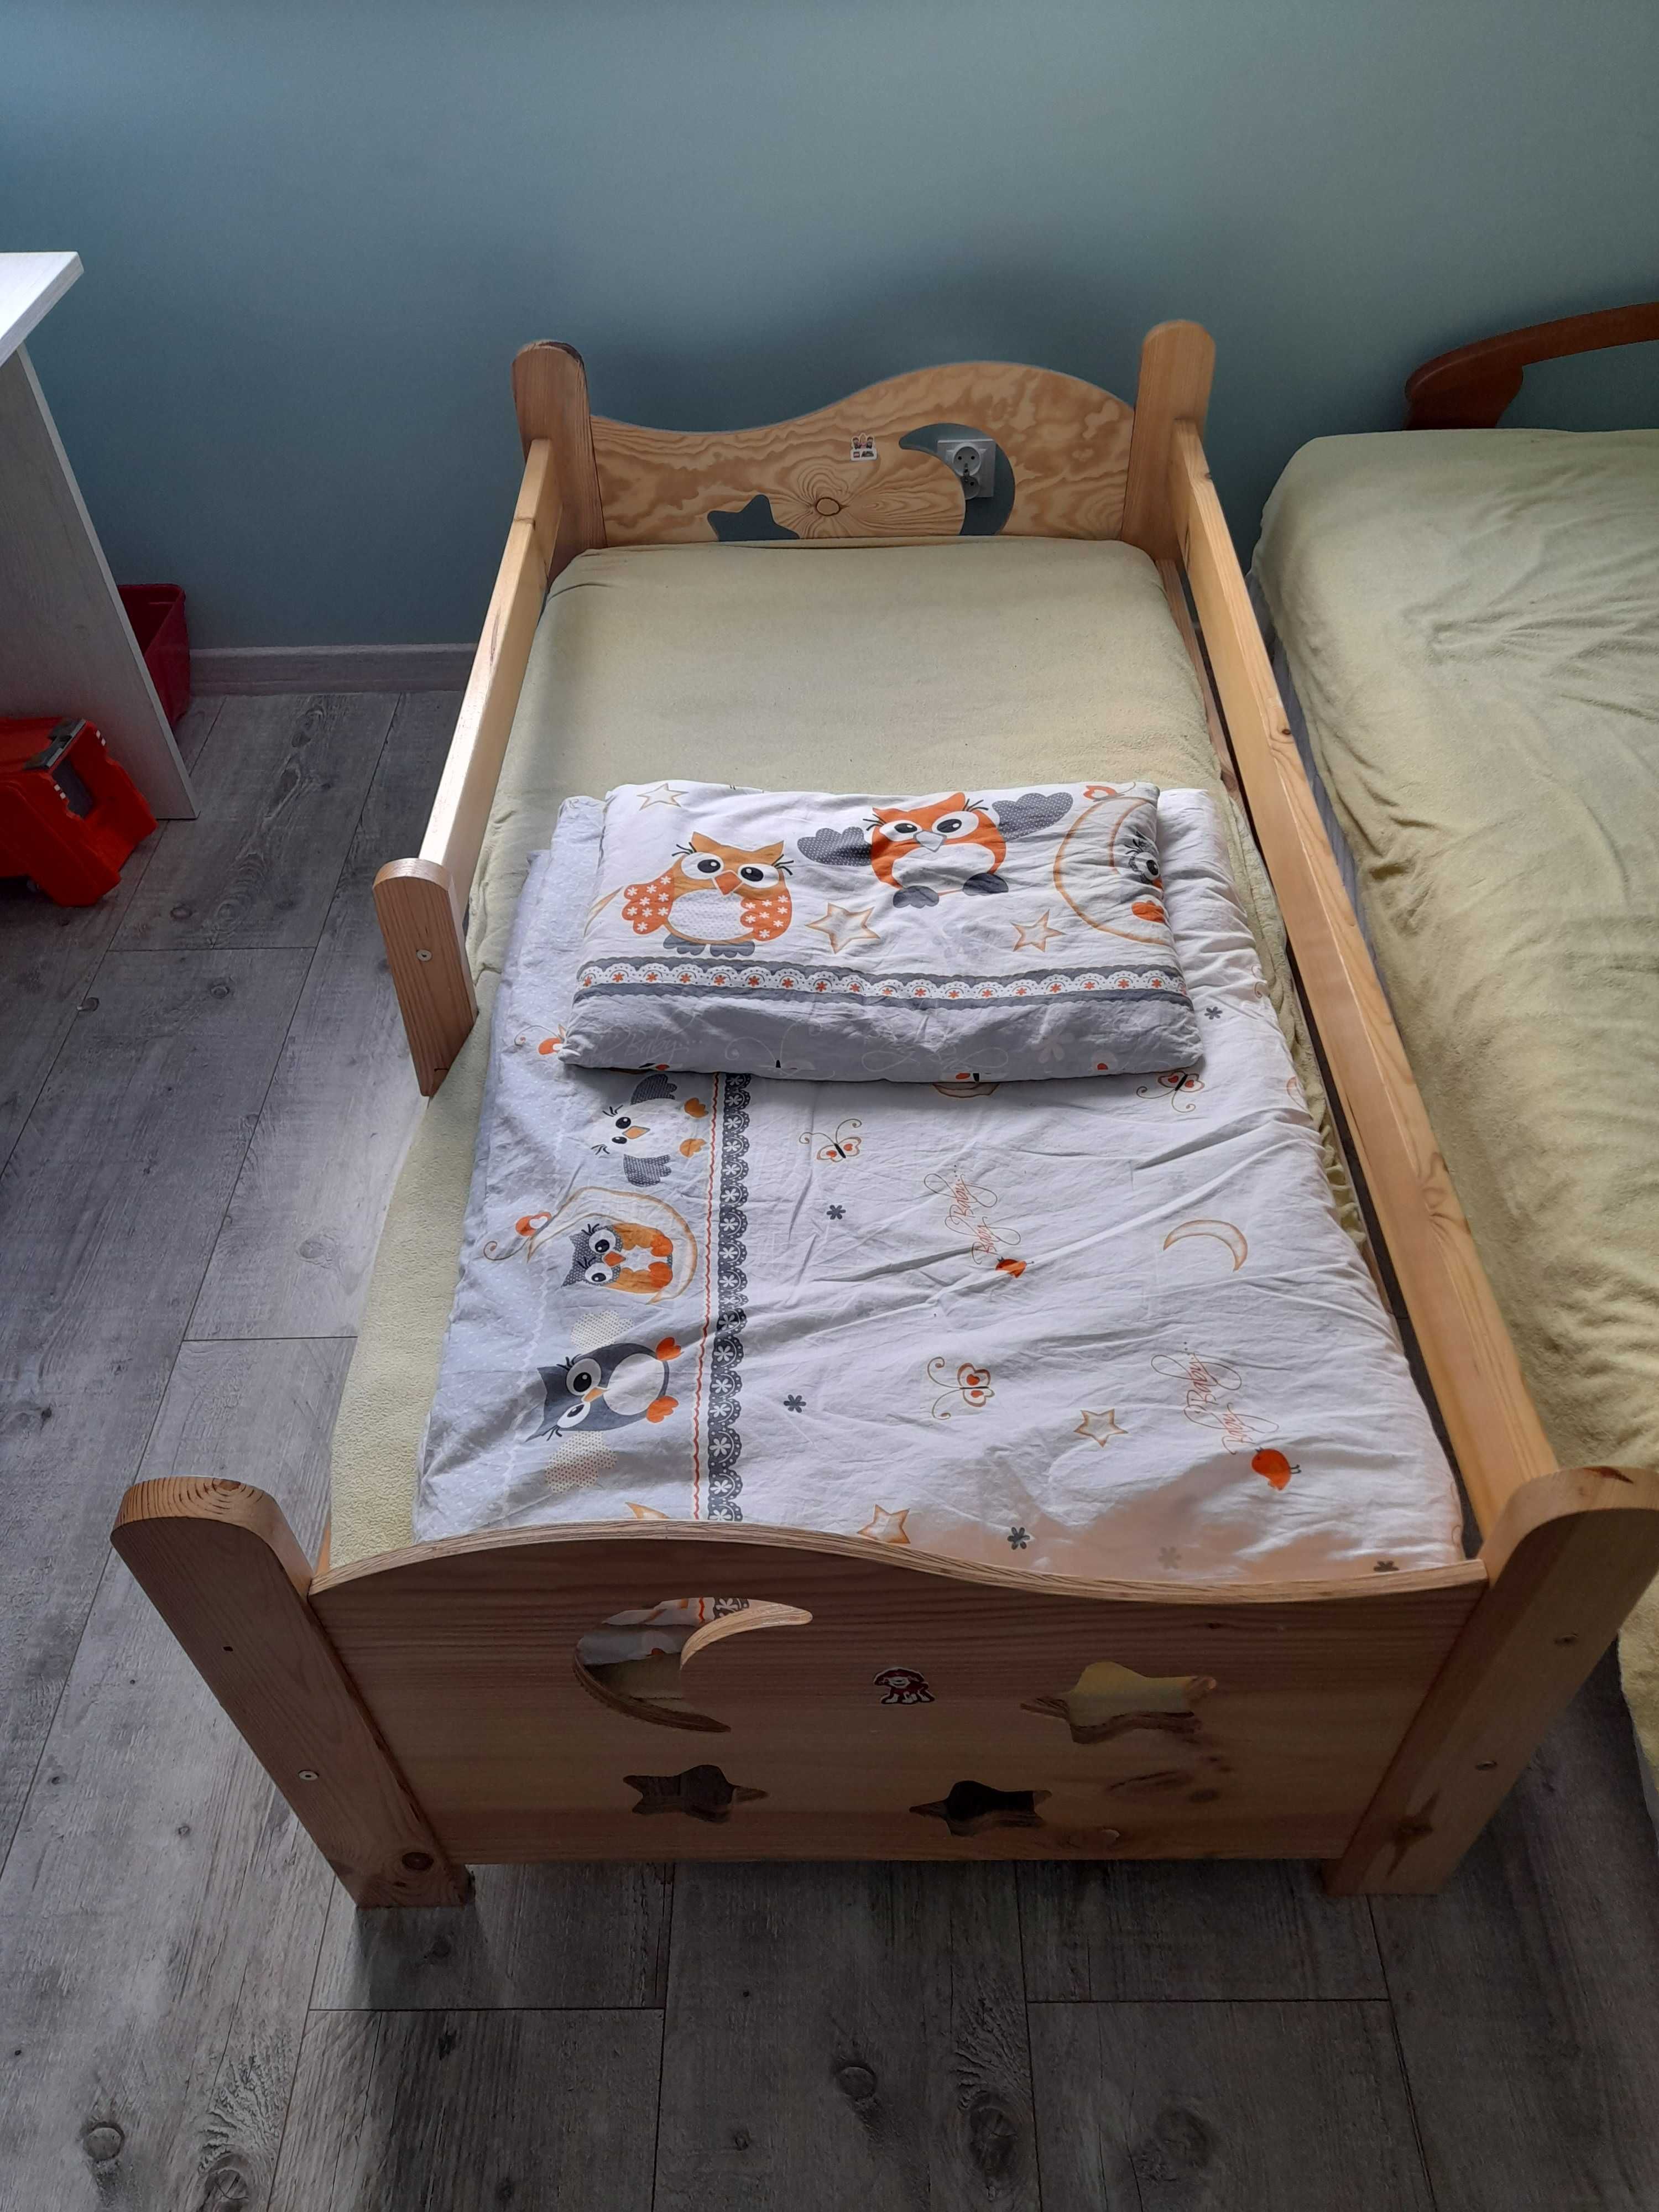 Łóżko sosnowe dziecięce 160 x 80 + pościel + materac.